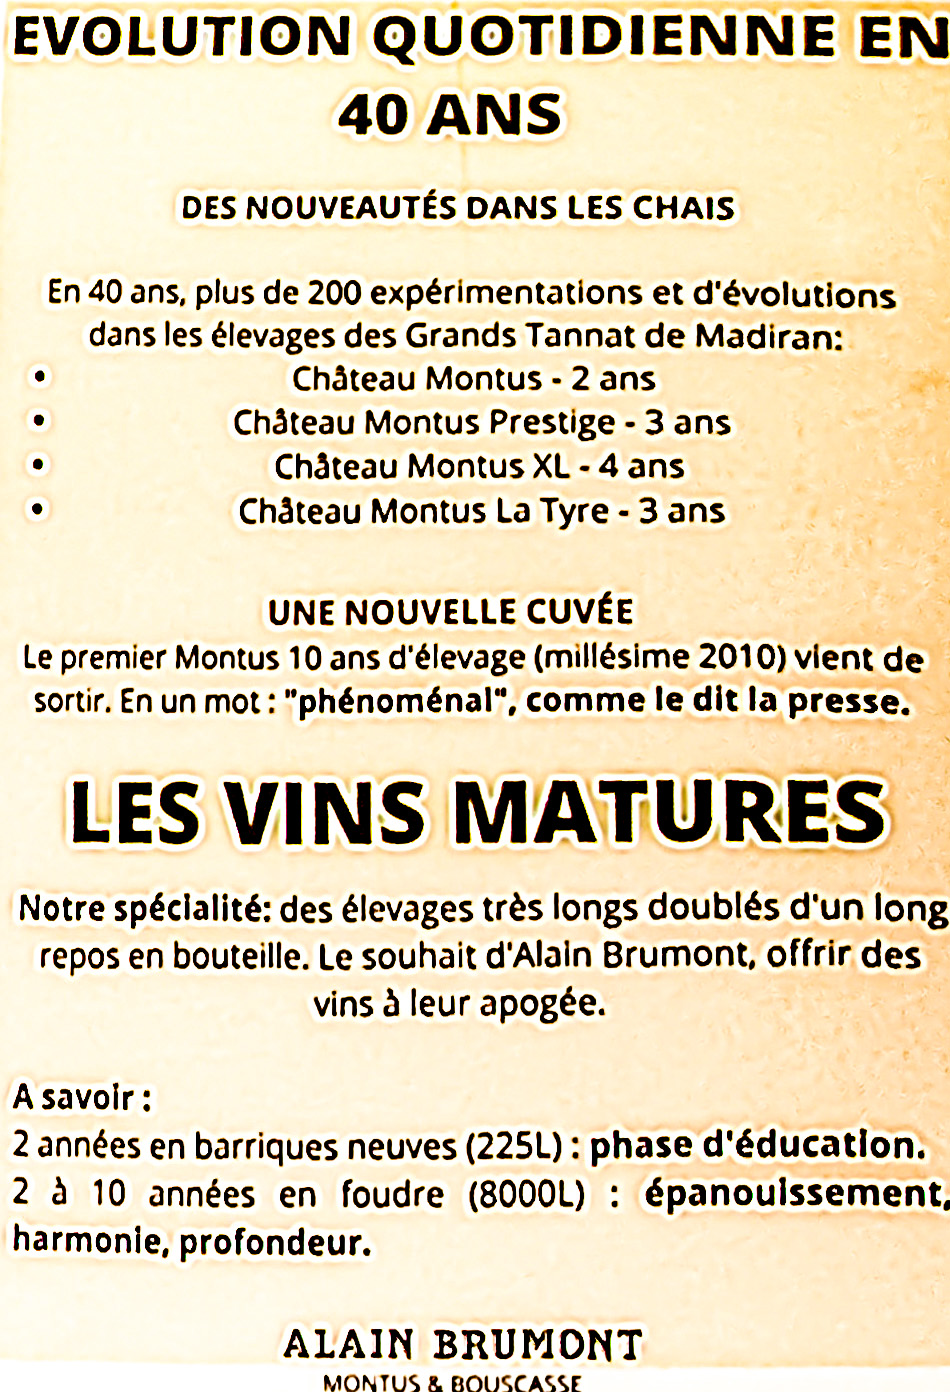 6 La méthode Alain brumont 1bis 191123.jpg